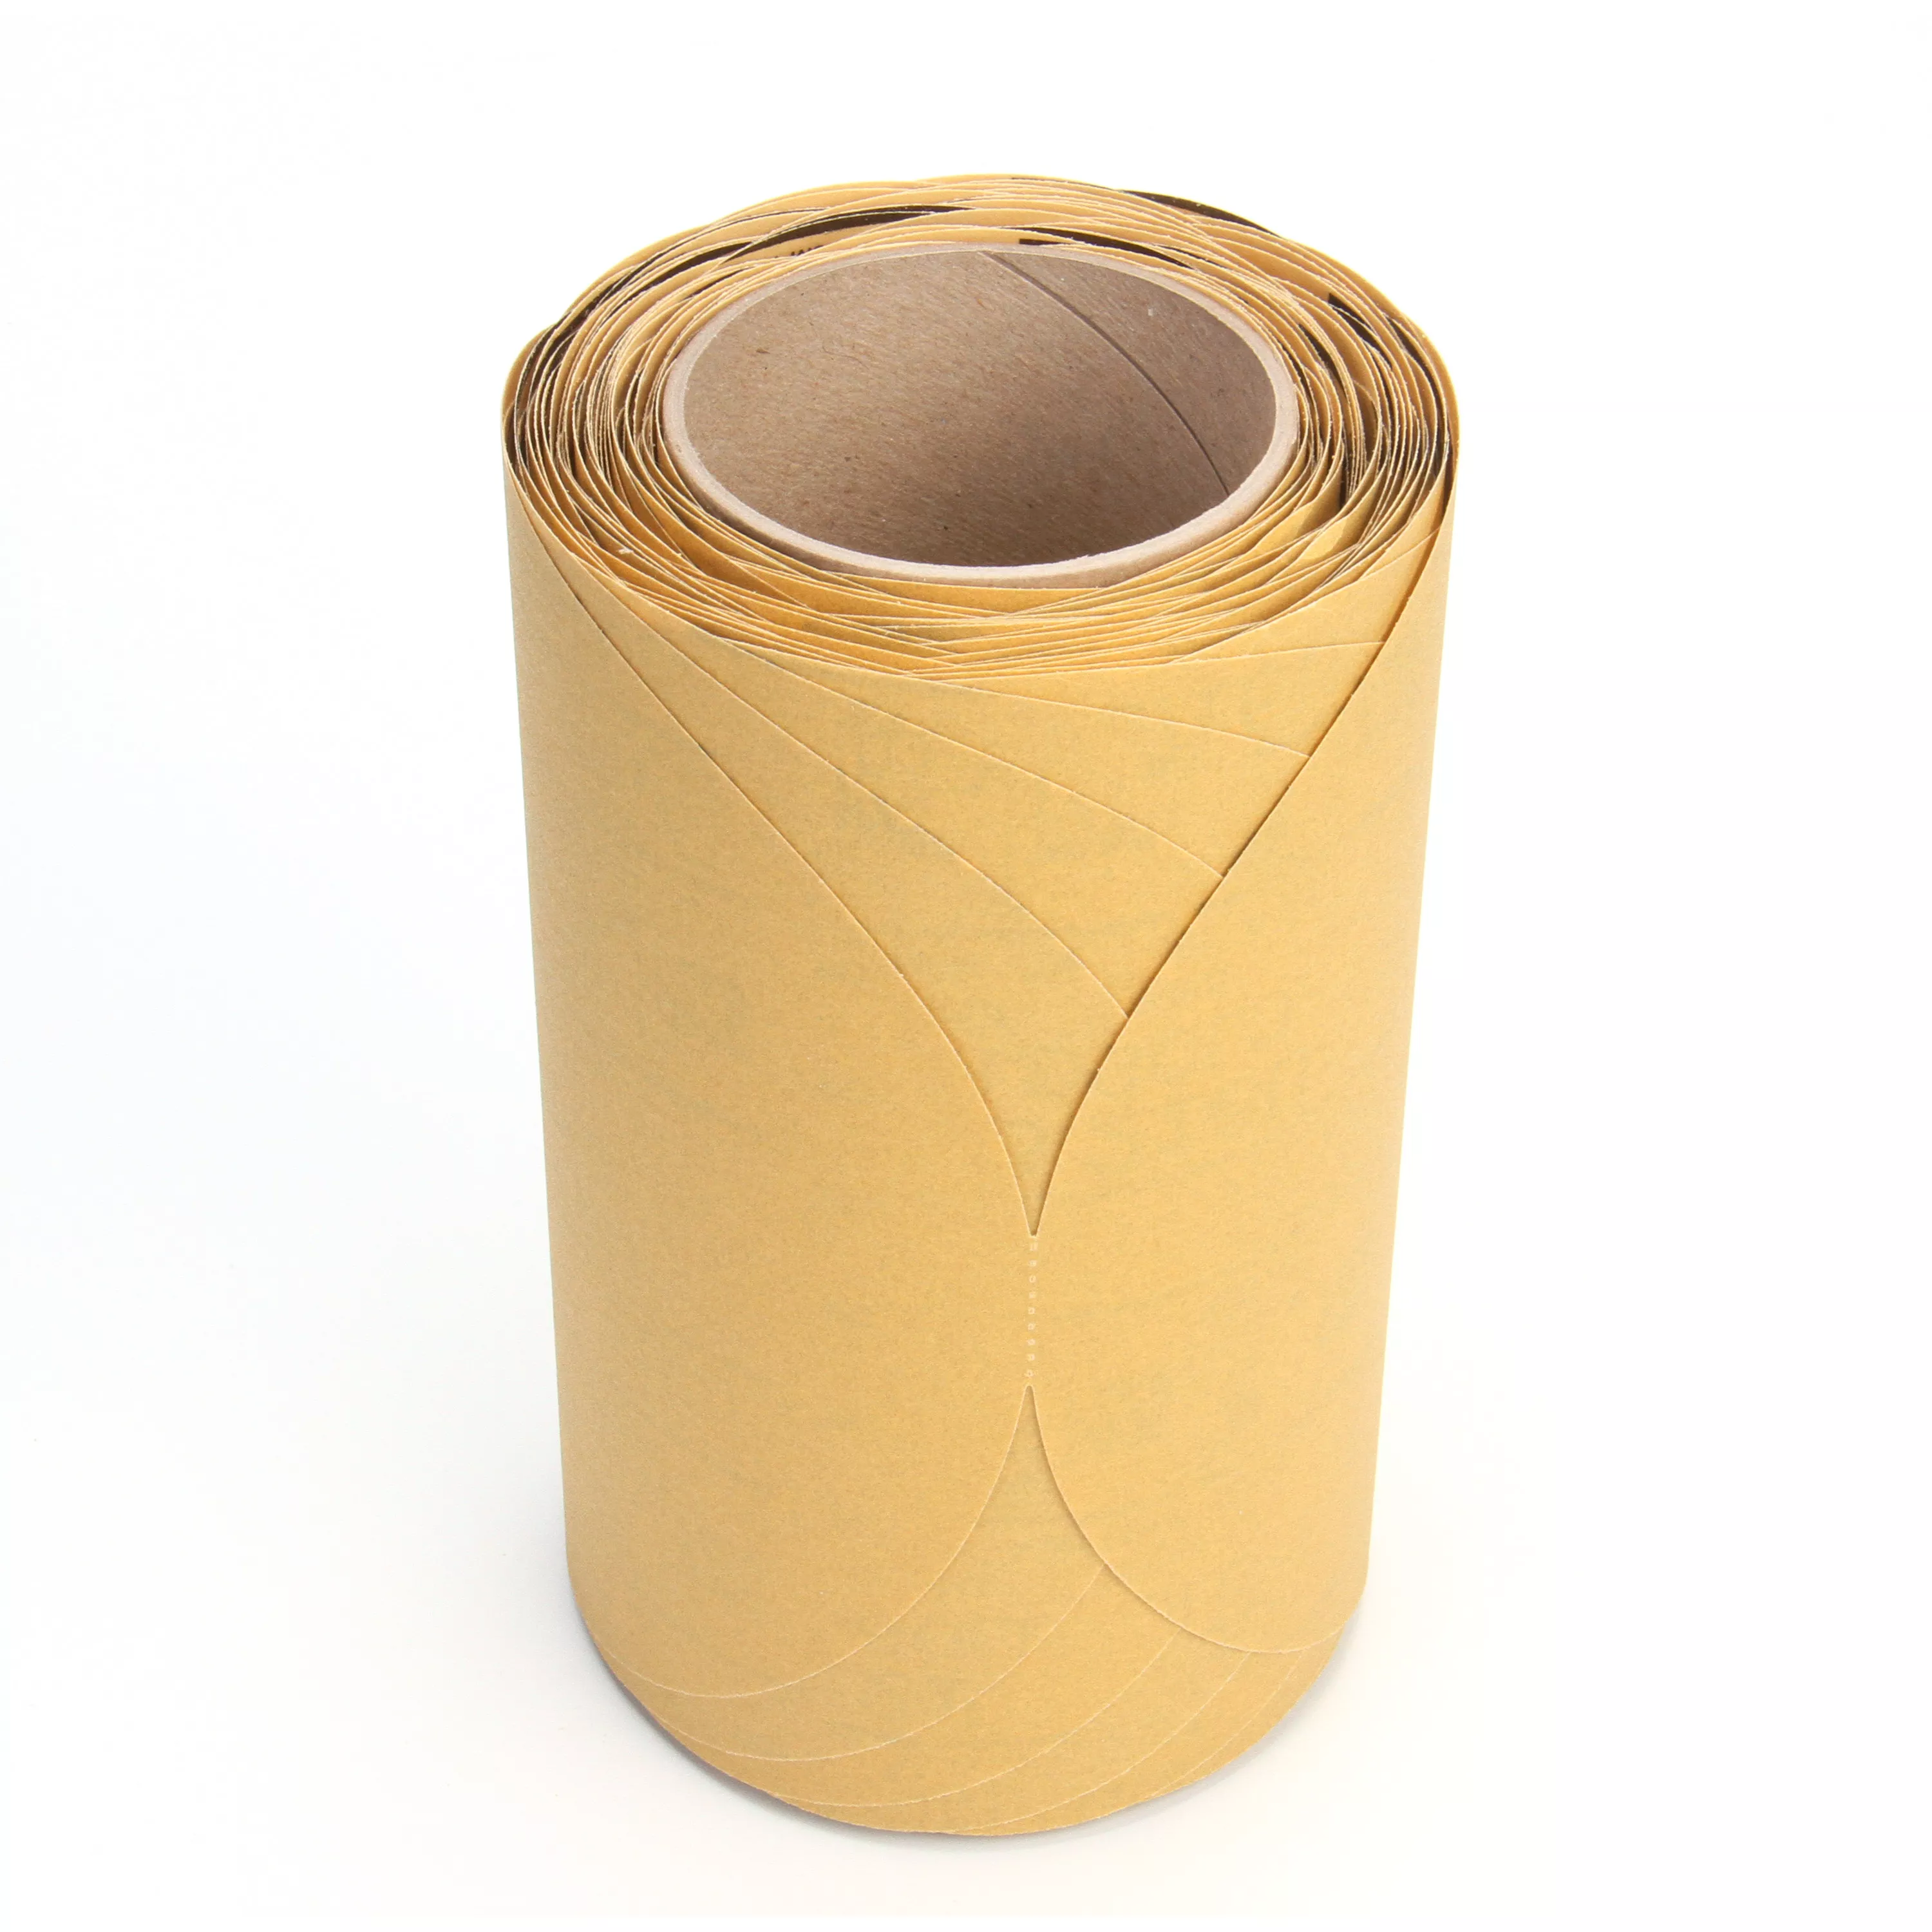 3M™ Stikit™ Gold Disc Roll, 01488, 8 in, P220, 125 discs per roll, 4
rolls per case